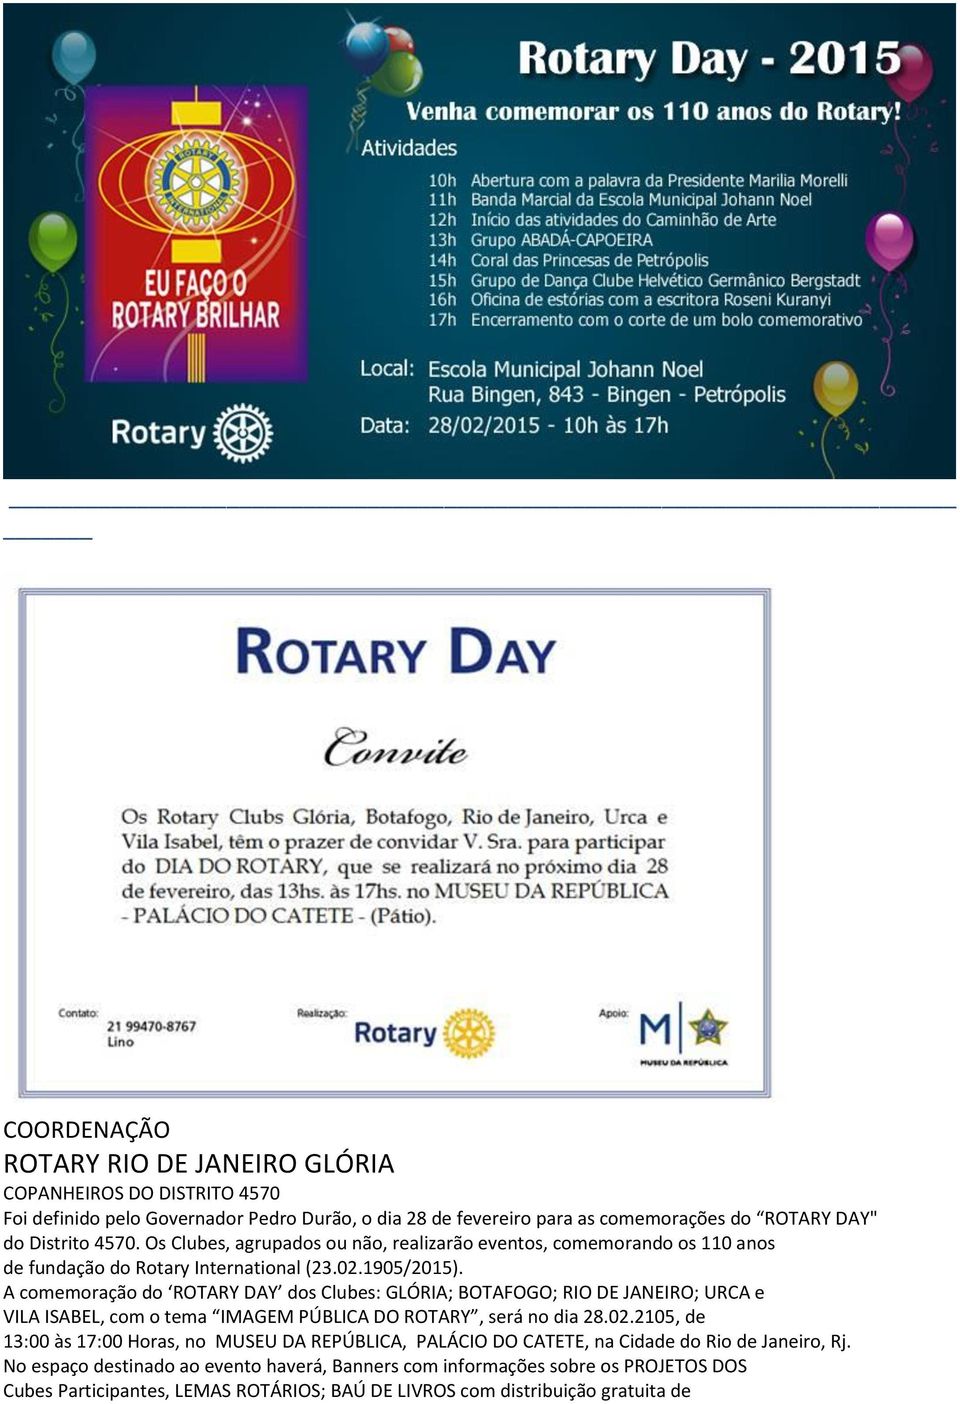 A comemoração do ROTARY DAY dos Clubes: GLÓRIA; BOTAFOGO; RIO DE JANEIRO; URCA e VILA ISABEL, com o tema IMAGEM PÚBLICA DO ROTARY, será no dia 28.02.